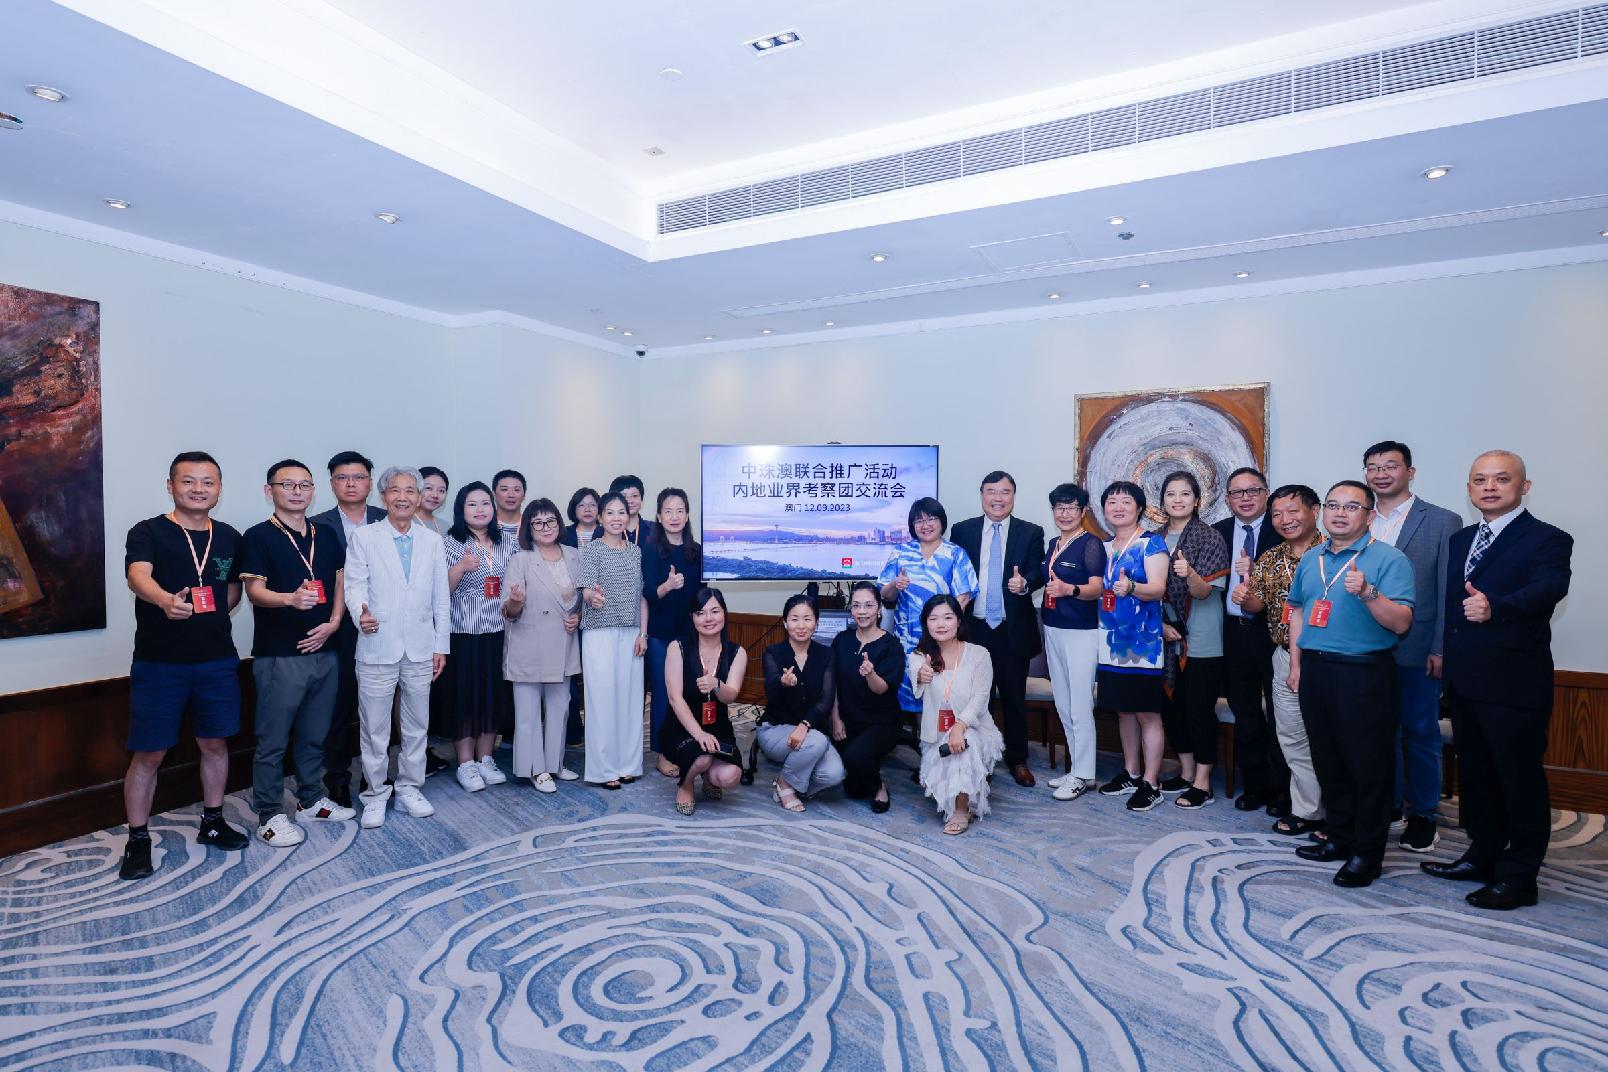 Turismo multi-destinos: Zhongshan, Zhuhai e Macau organizam visita de familiarização para operadores e promovem itinerários de ligação das três cidades em Changsha e Quanzhou para alargar fontes de visitantes